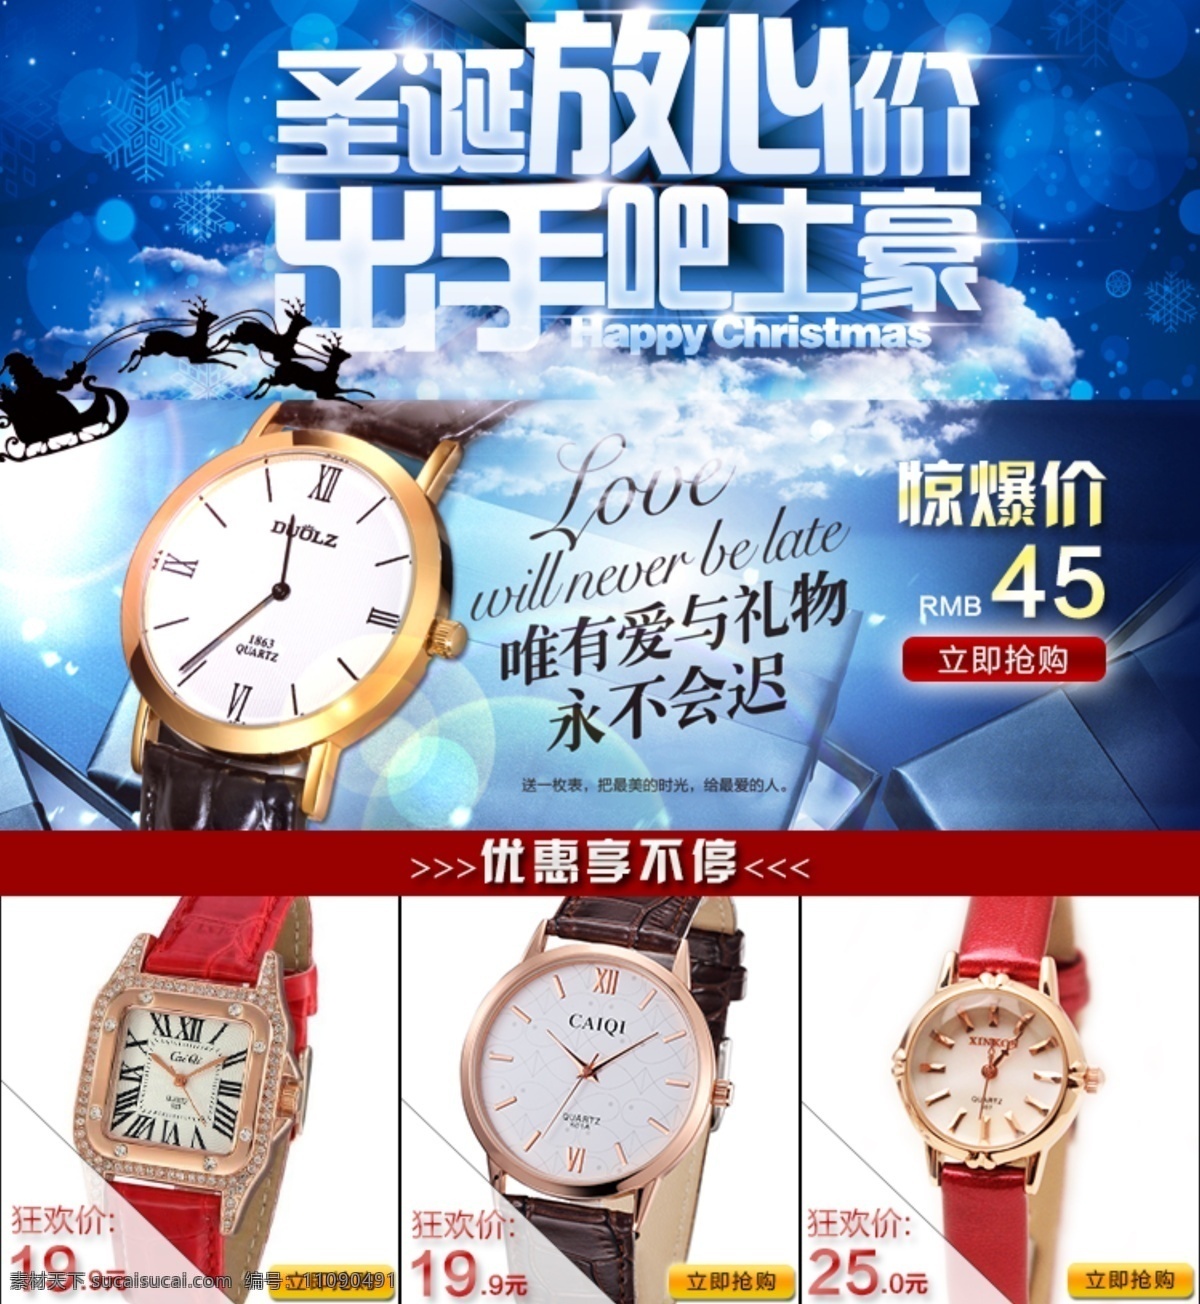 淘宝 天猫 圣诞 促销 海报 模版 详情模版 手表模版 原创设计 原创淘宝设计